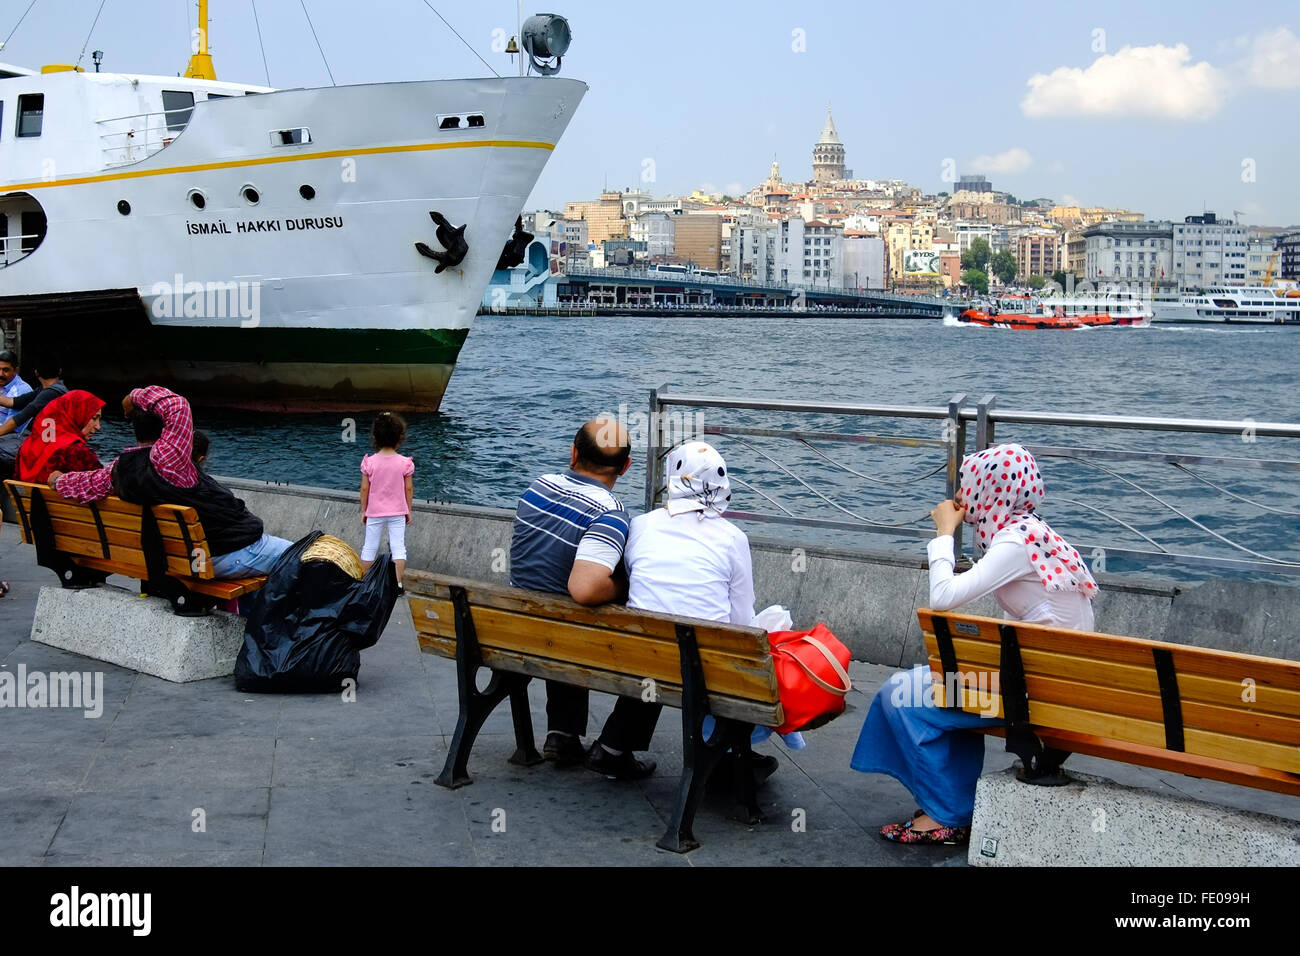 'Istanbul, Turquie - Juillet 18,2014 : Cloudy Day avis de certaines personnes de regarder un voile de mousseline et de parler eux-mêmes" Banque D'Images